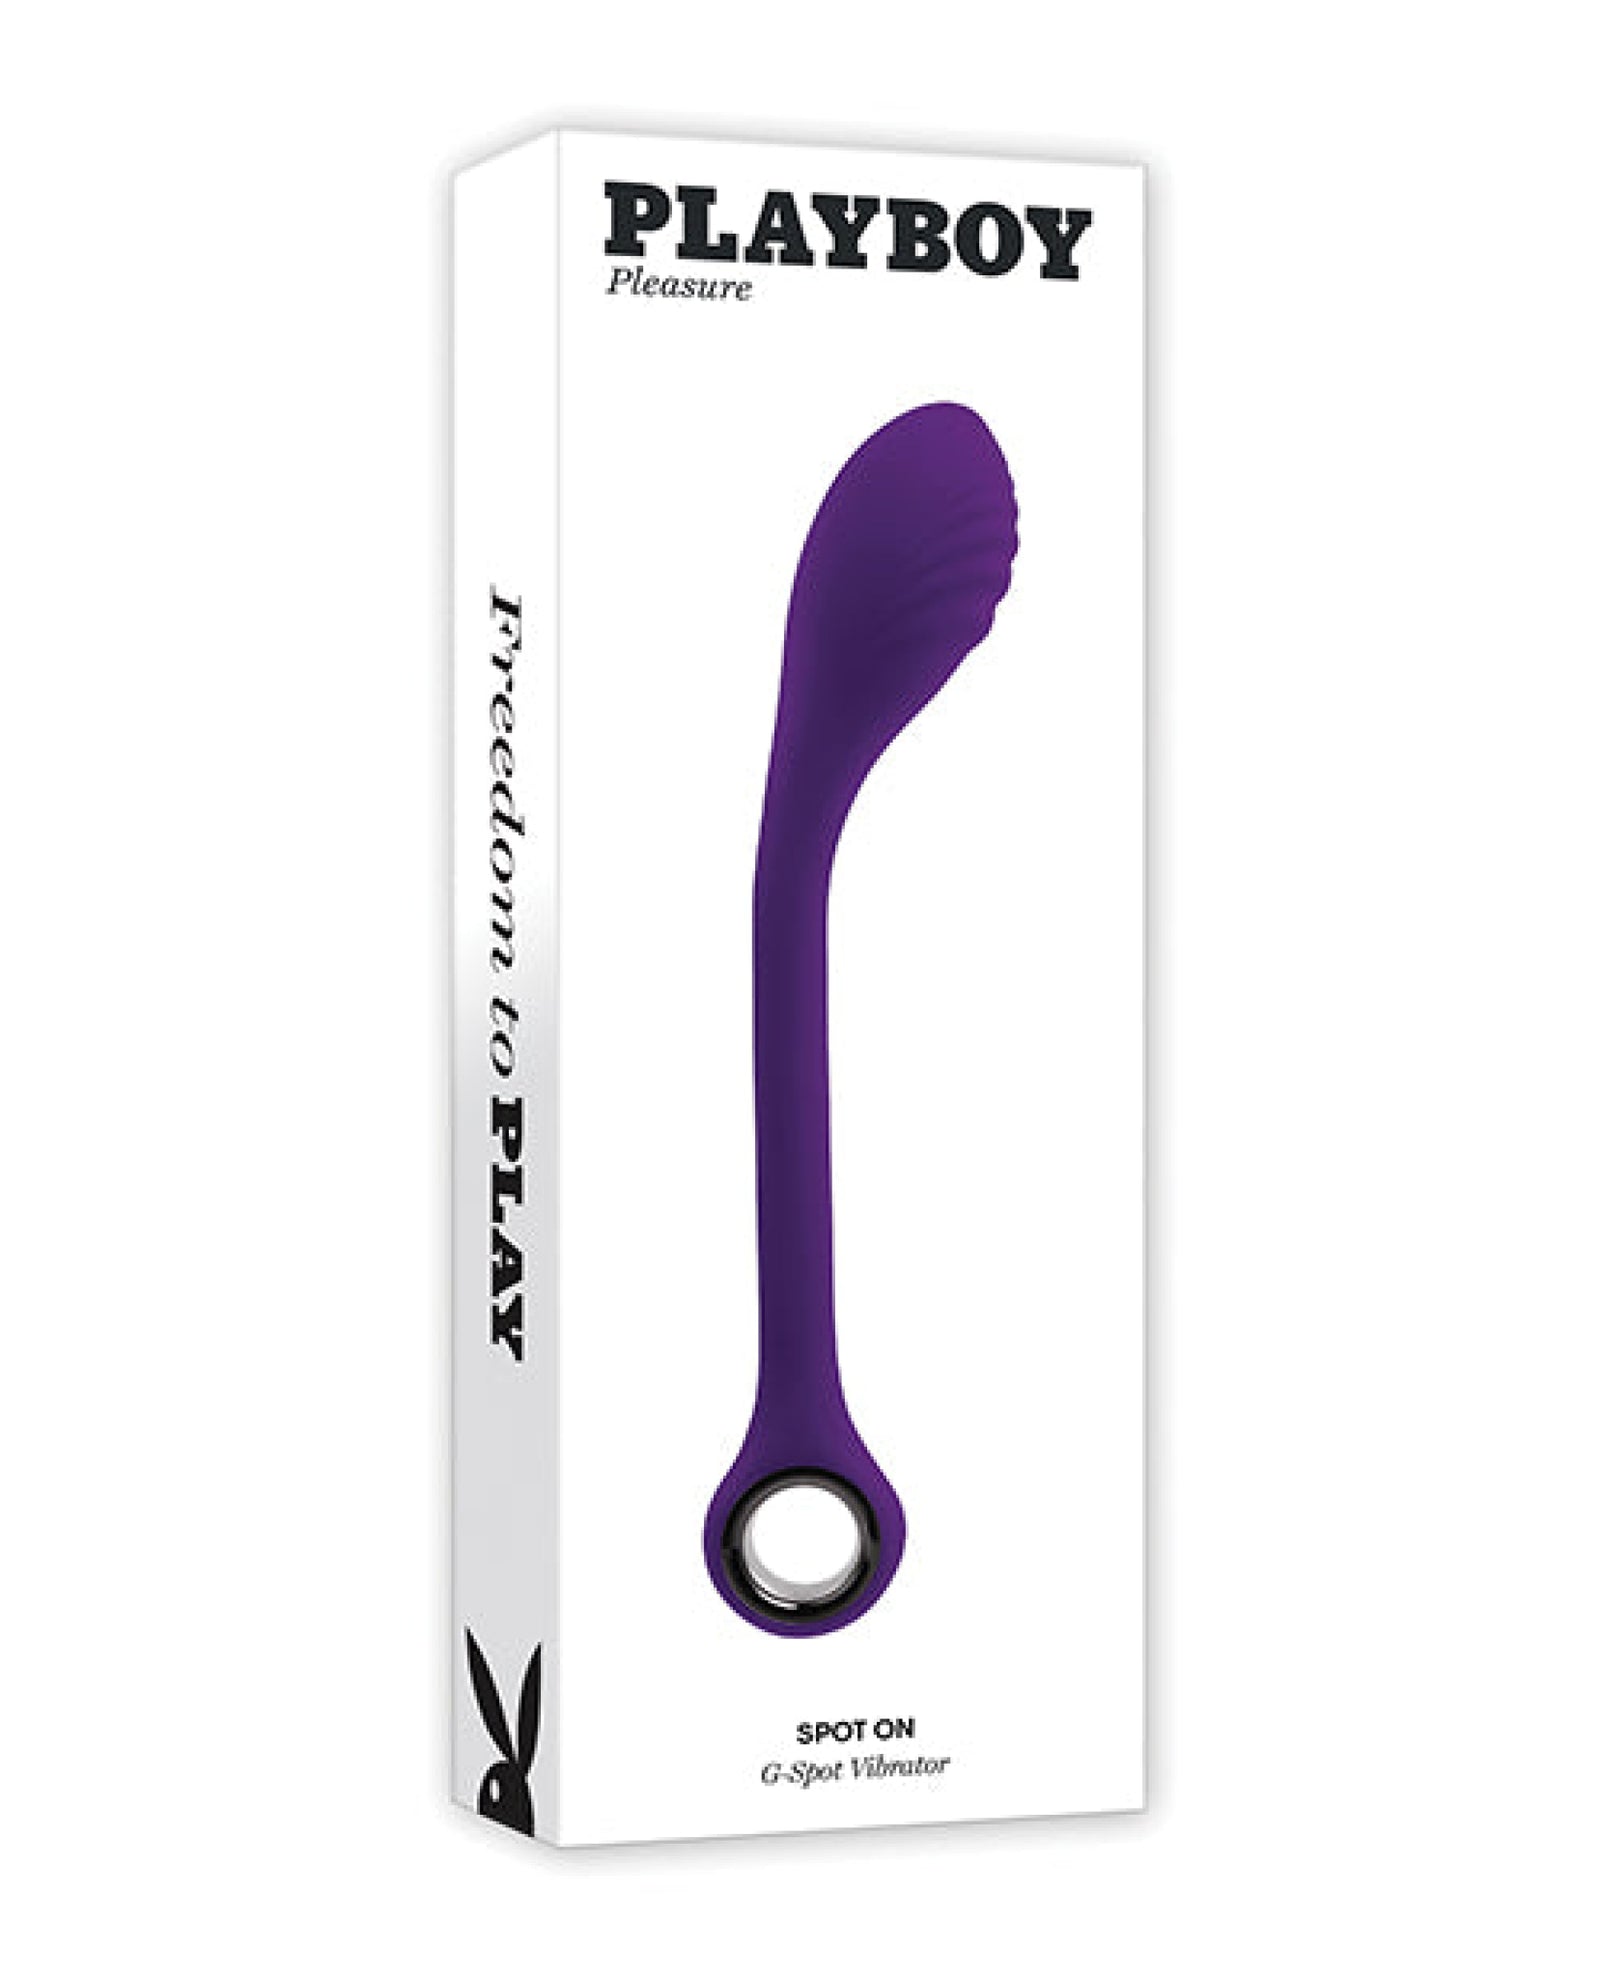 Playboy Pleasure Spot On G-spot Vibrator - Acai Playboy